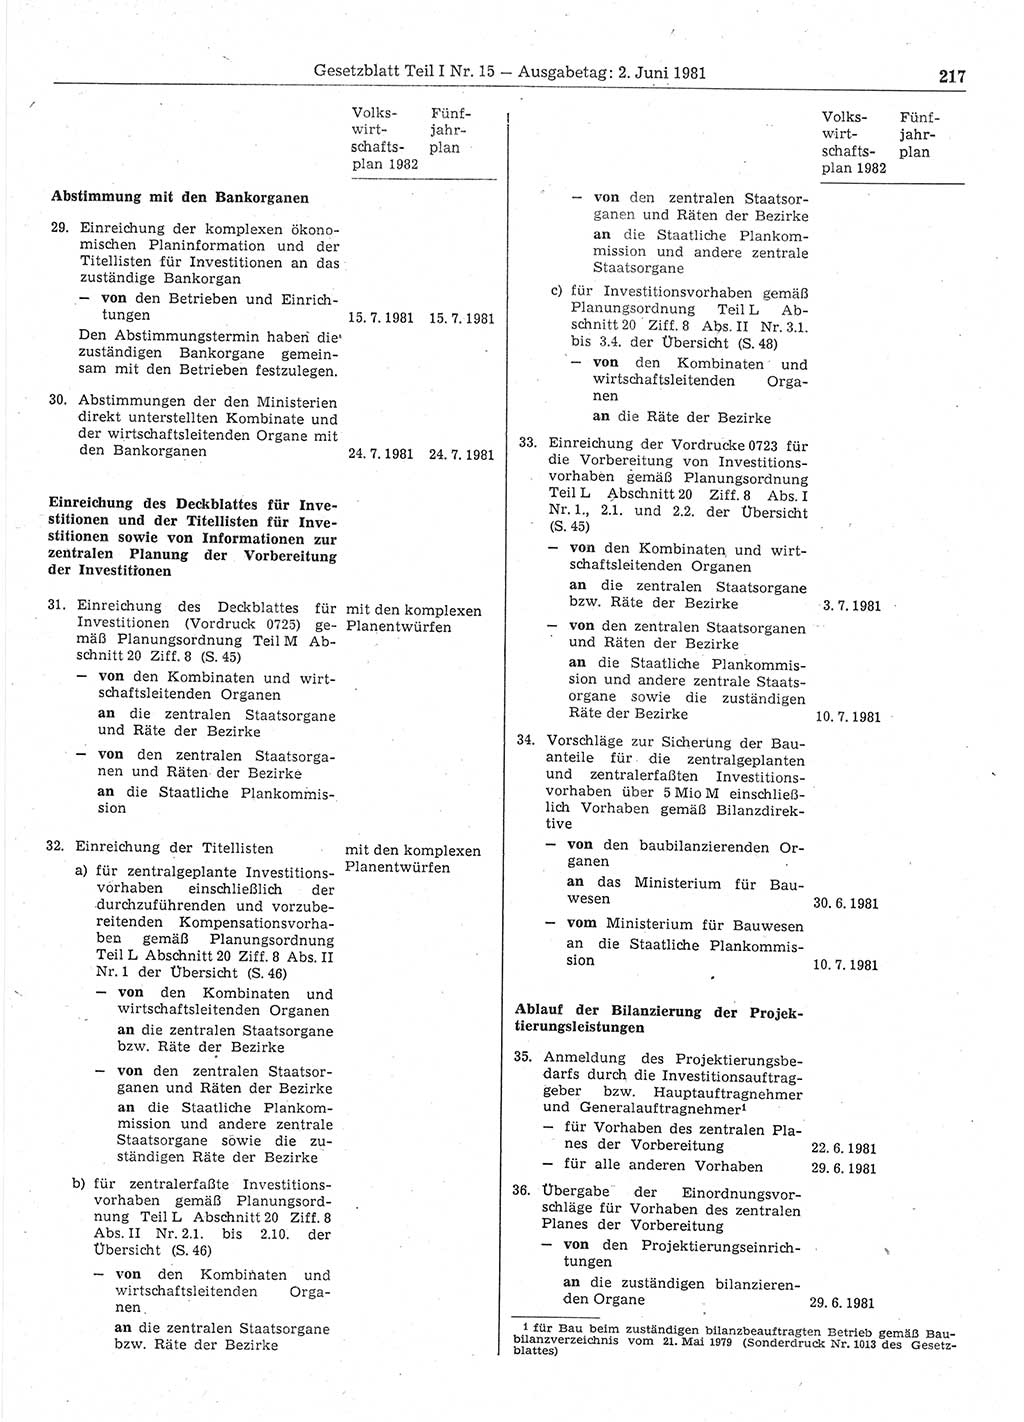 Gesetzblatt (GBl.) der Deutschen Demokratischen Republik (DDR) Teil Ⅰ 1981, Seite 217 (GBl. DDR Ⅰ 1981, S. 217)